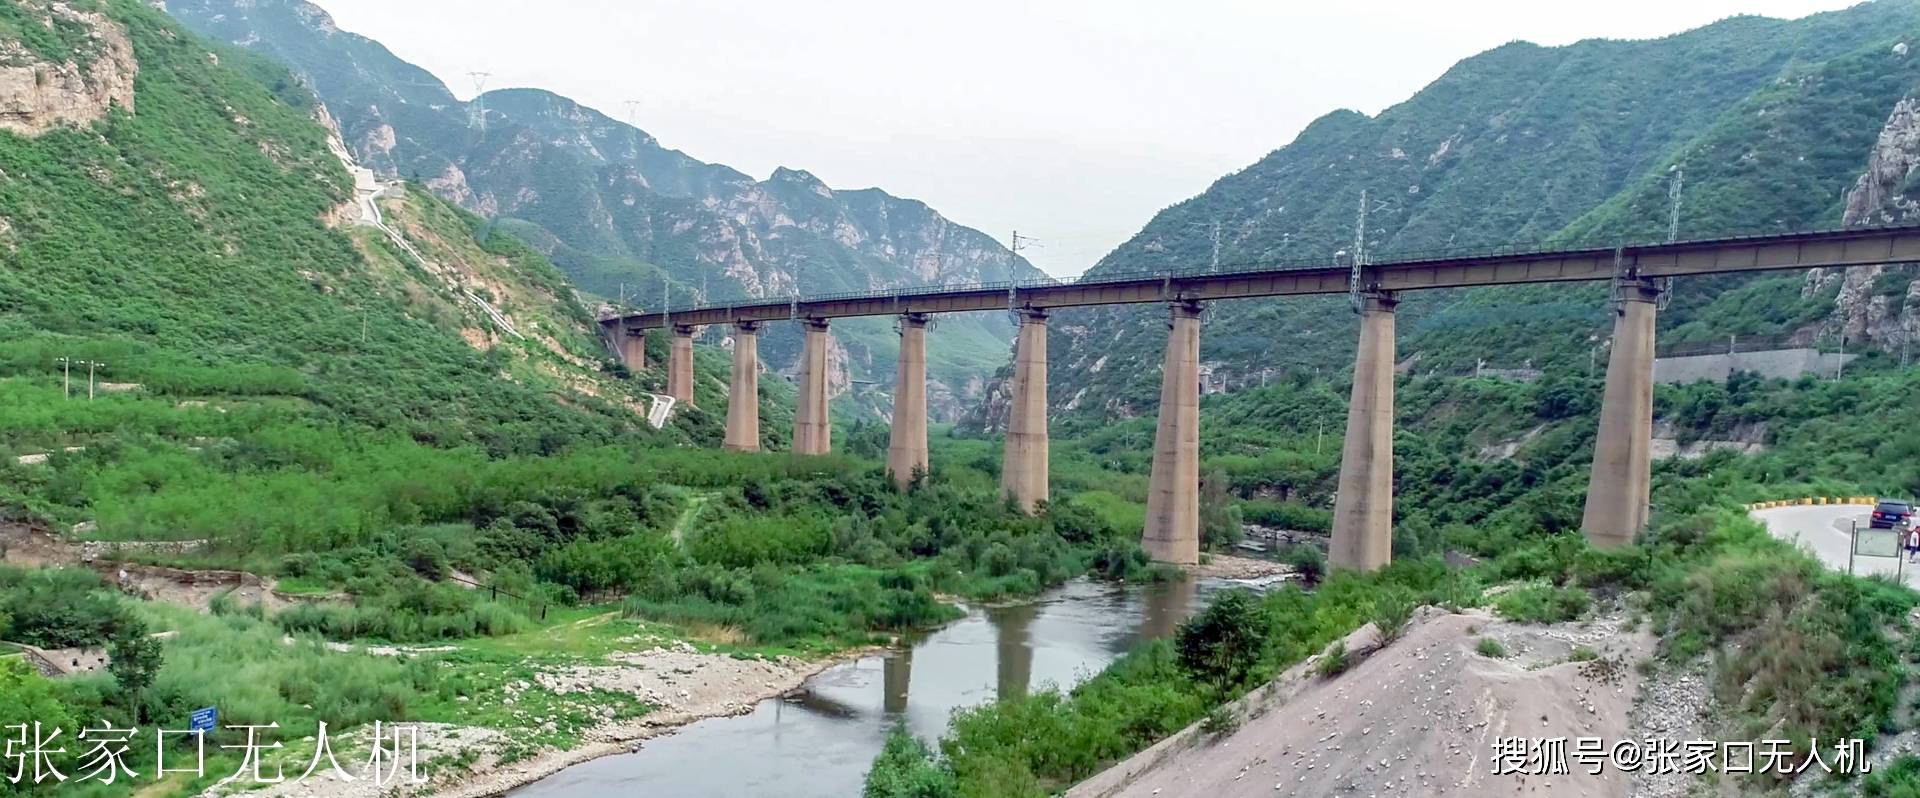 京张铁路形状图片